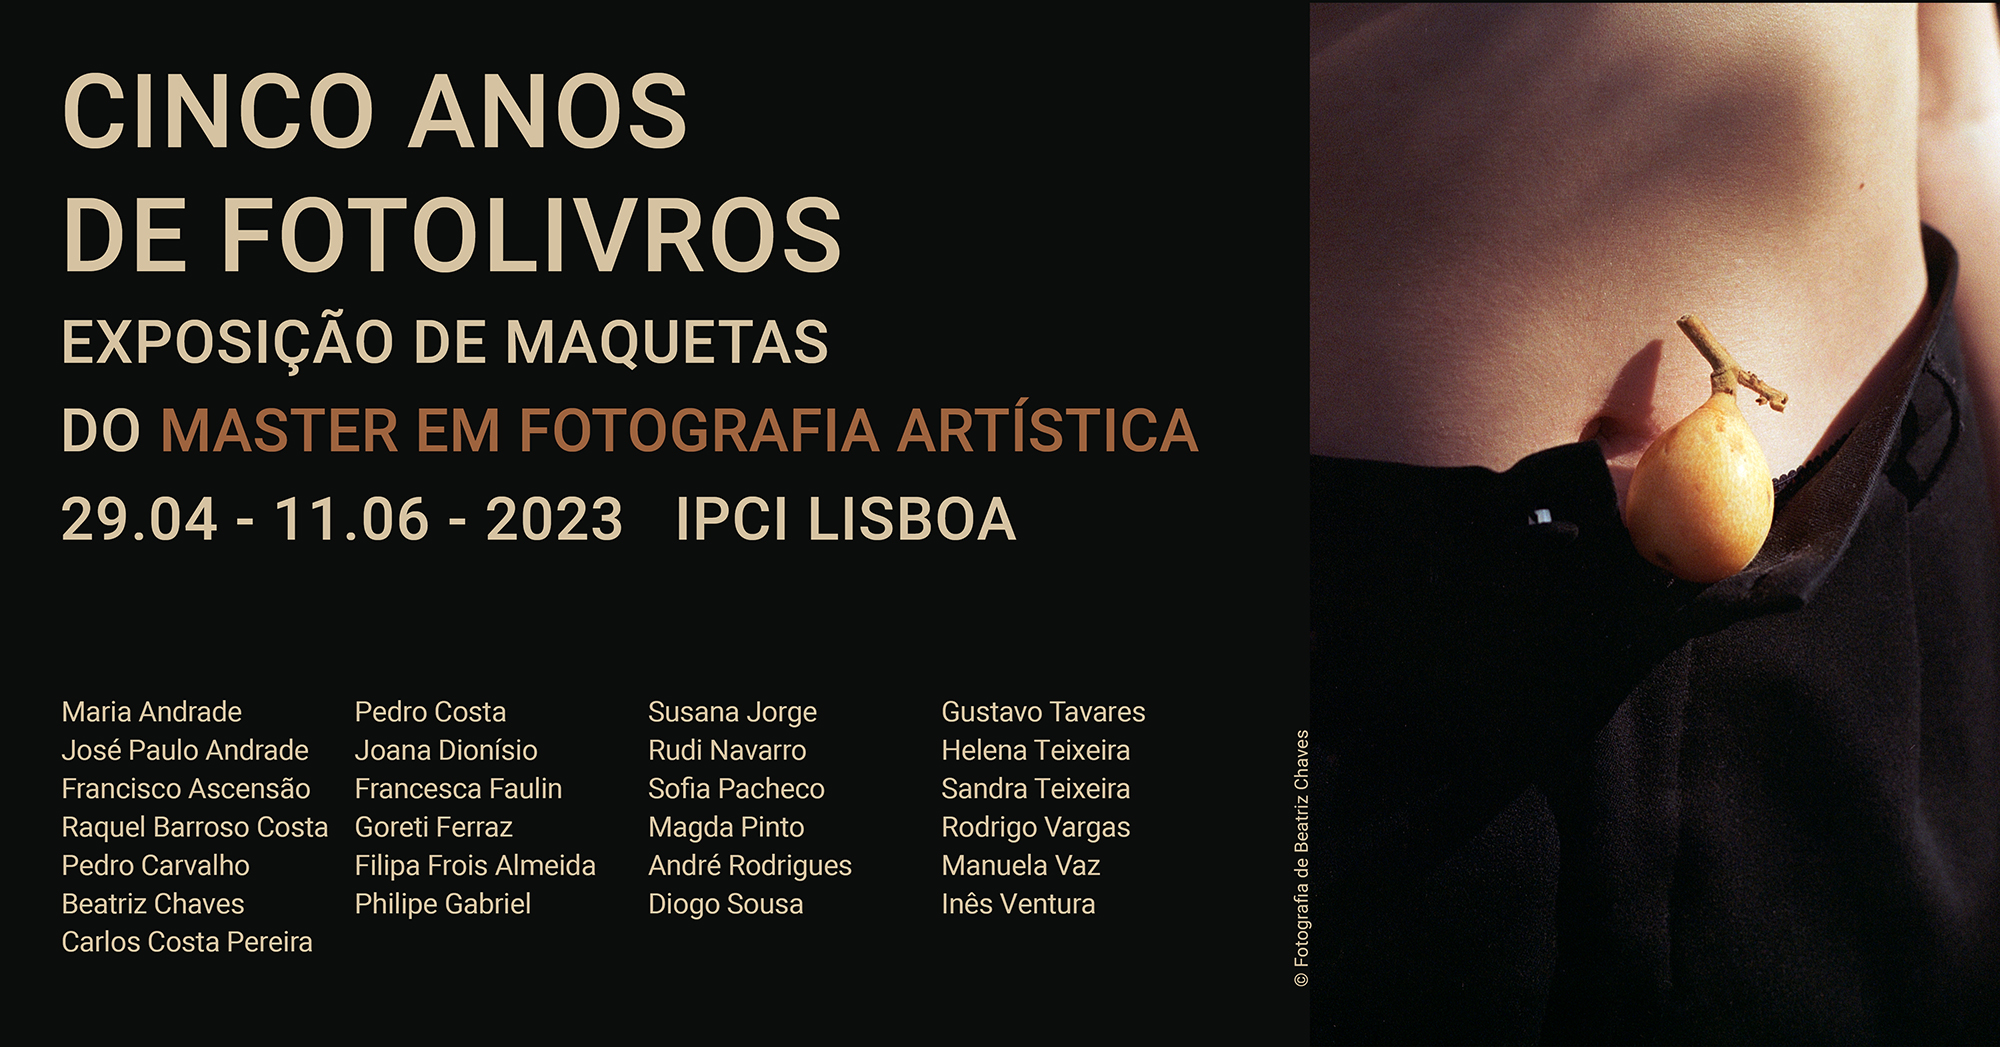 «Cinco anos de fotolivros» exposição de maquetas do Master em Fotografia Artísitica do IPCI